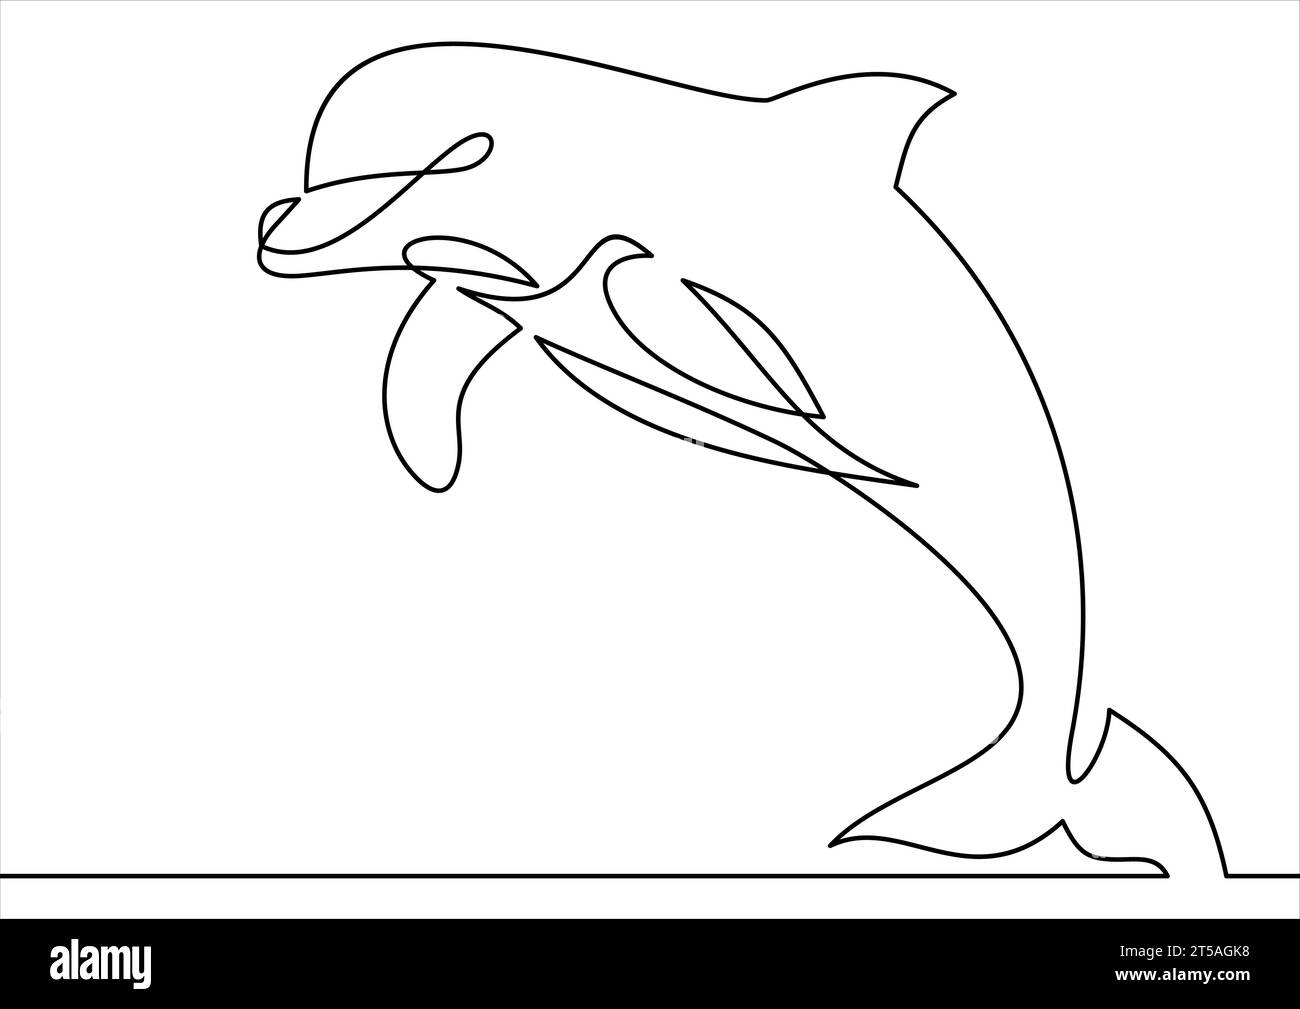 Linienart Delfinvektorillustration - durchgehende Linienzeichnung Stock Vektor